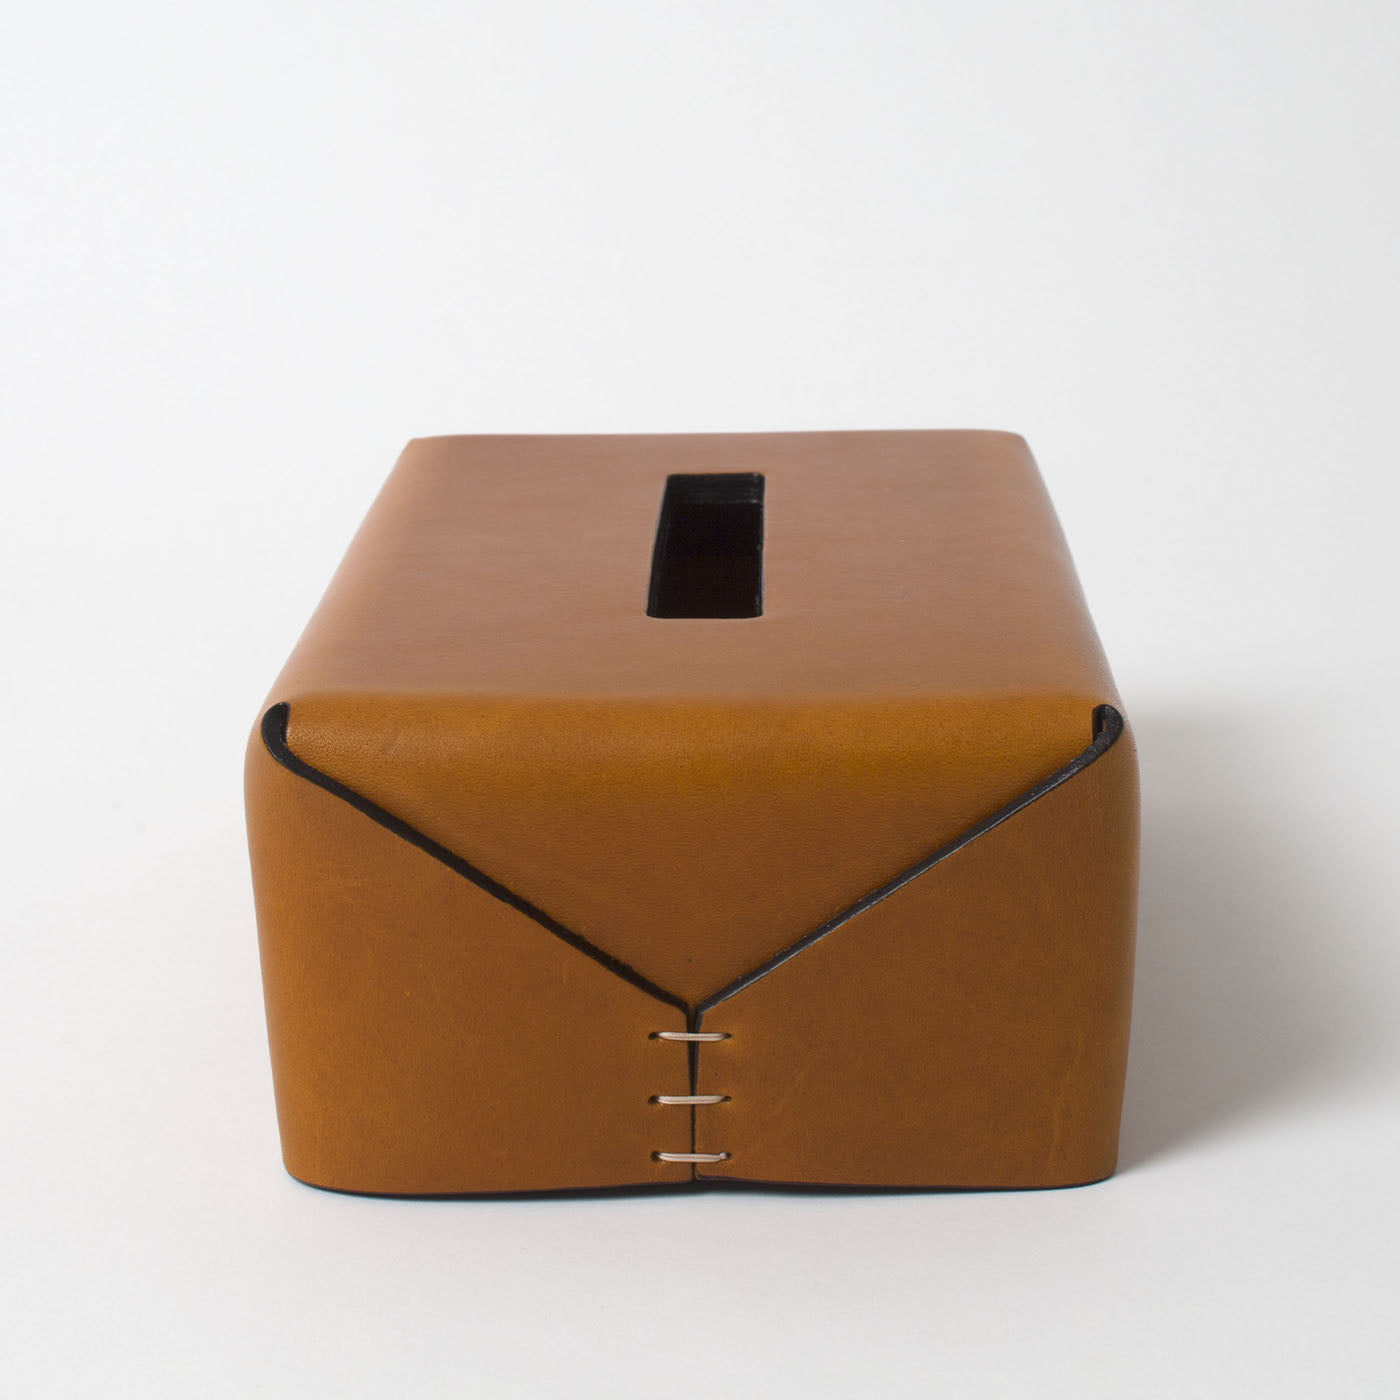 Regular Rectangular-Cut Brown Tissue Box by Oscar Maschera - Alternative view 1